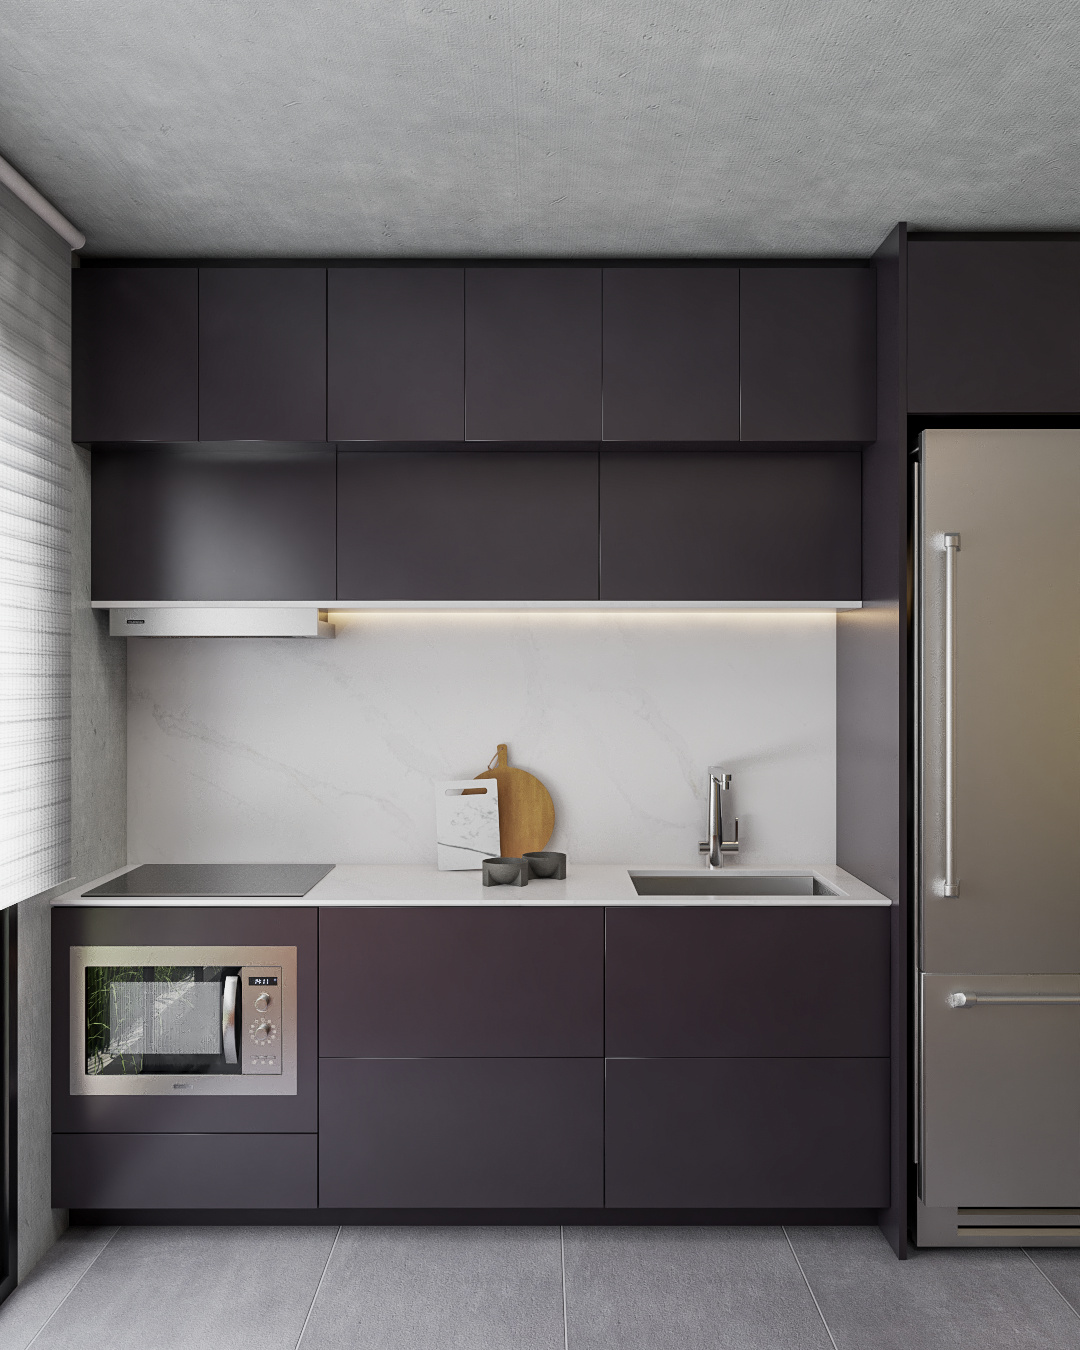 Cozinha compacta com linhas retas e cores escuras